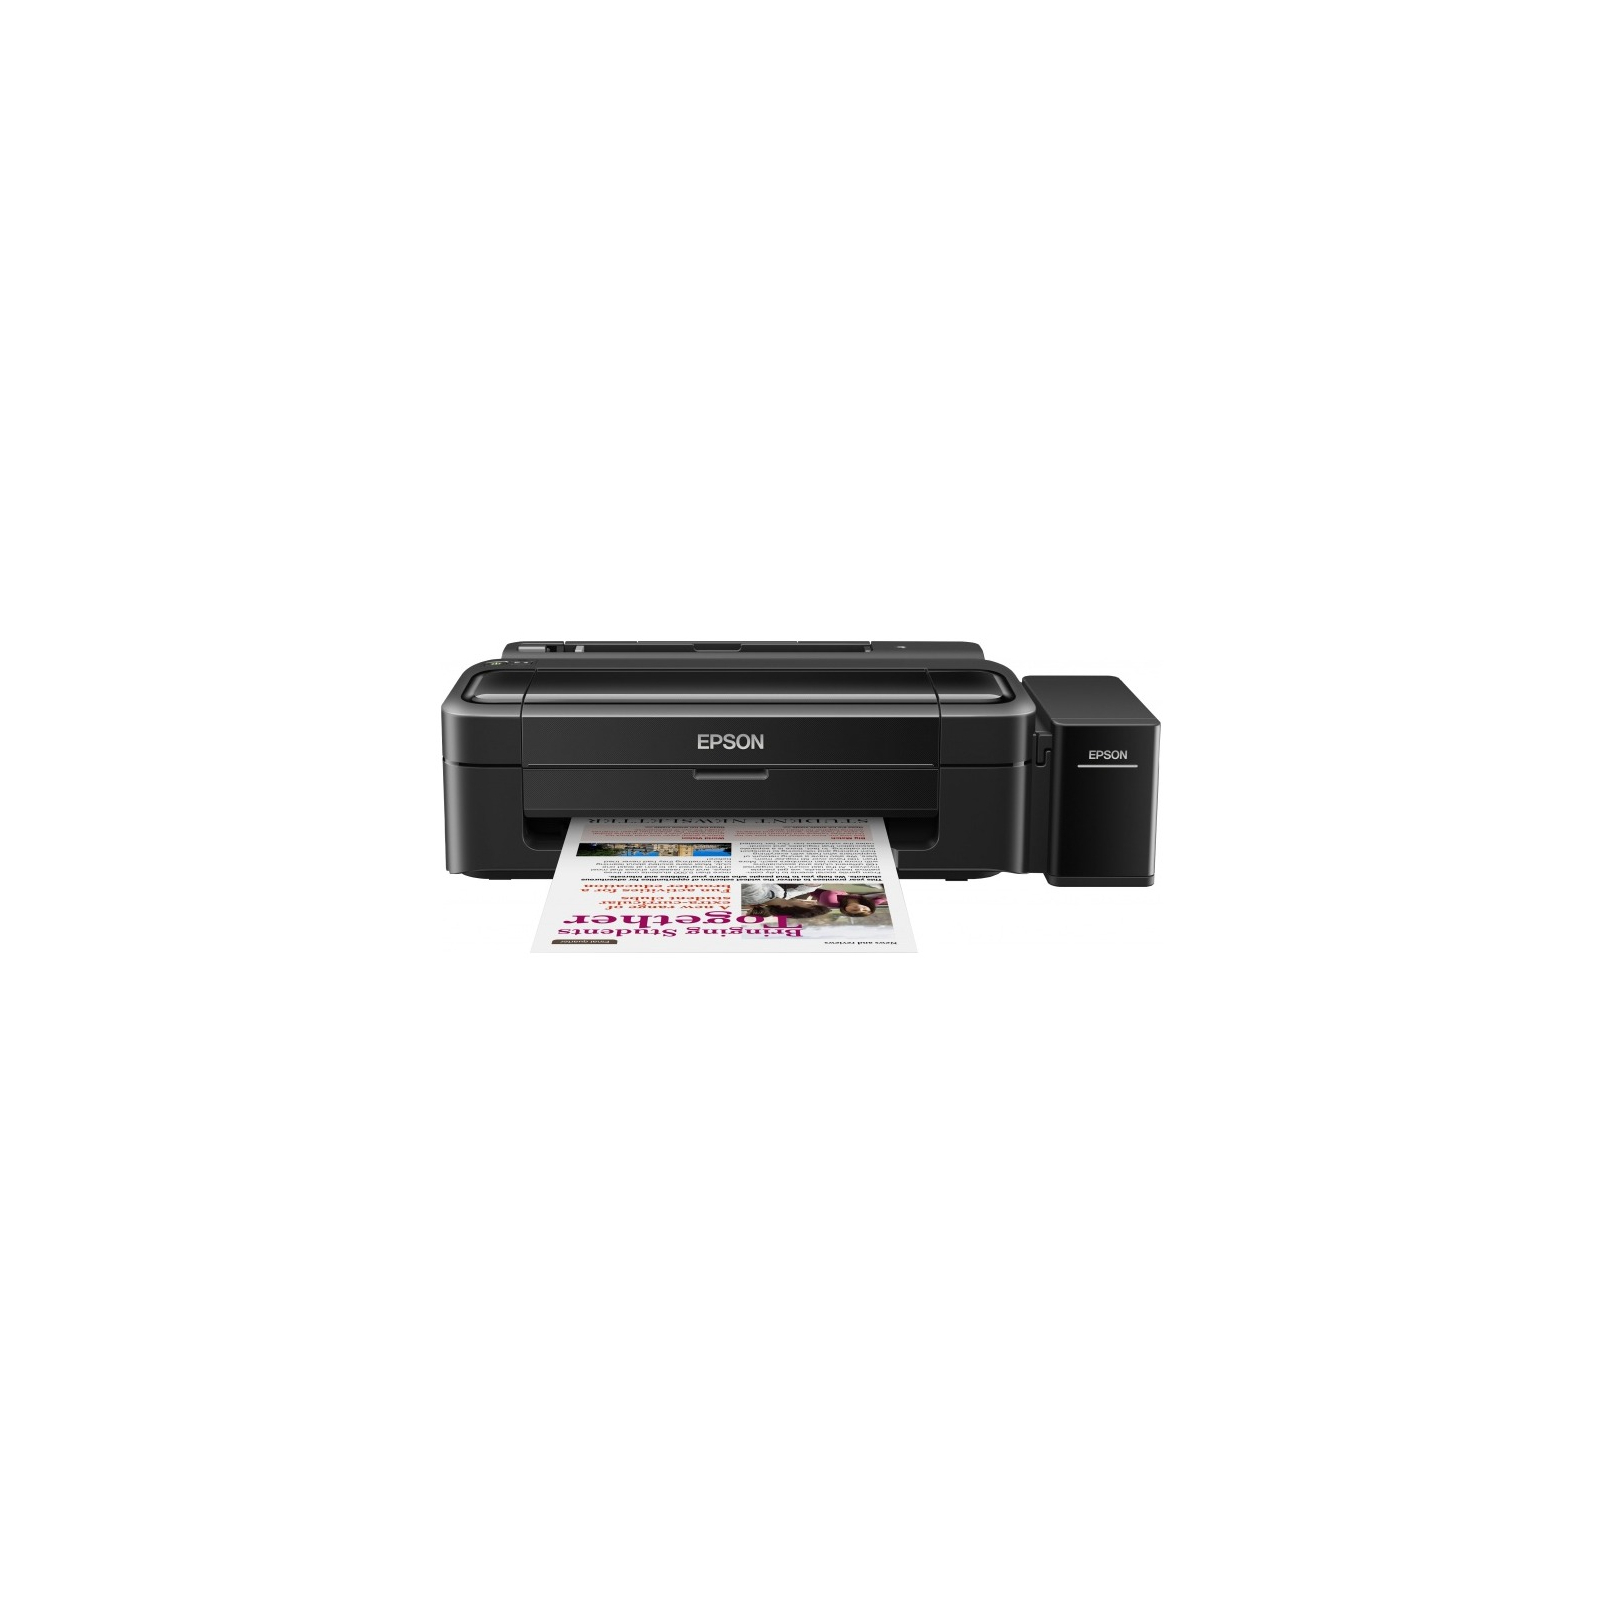 Струйный принтер Epson L132 (C11CE58403)